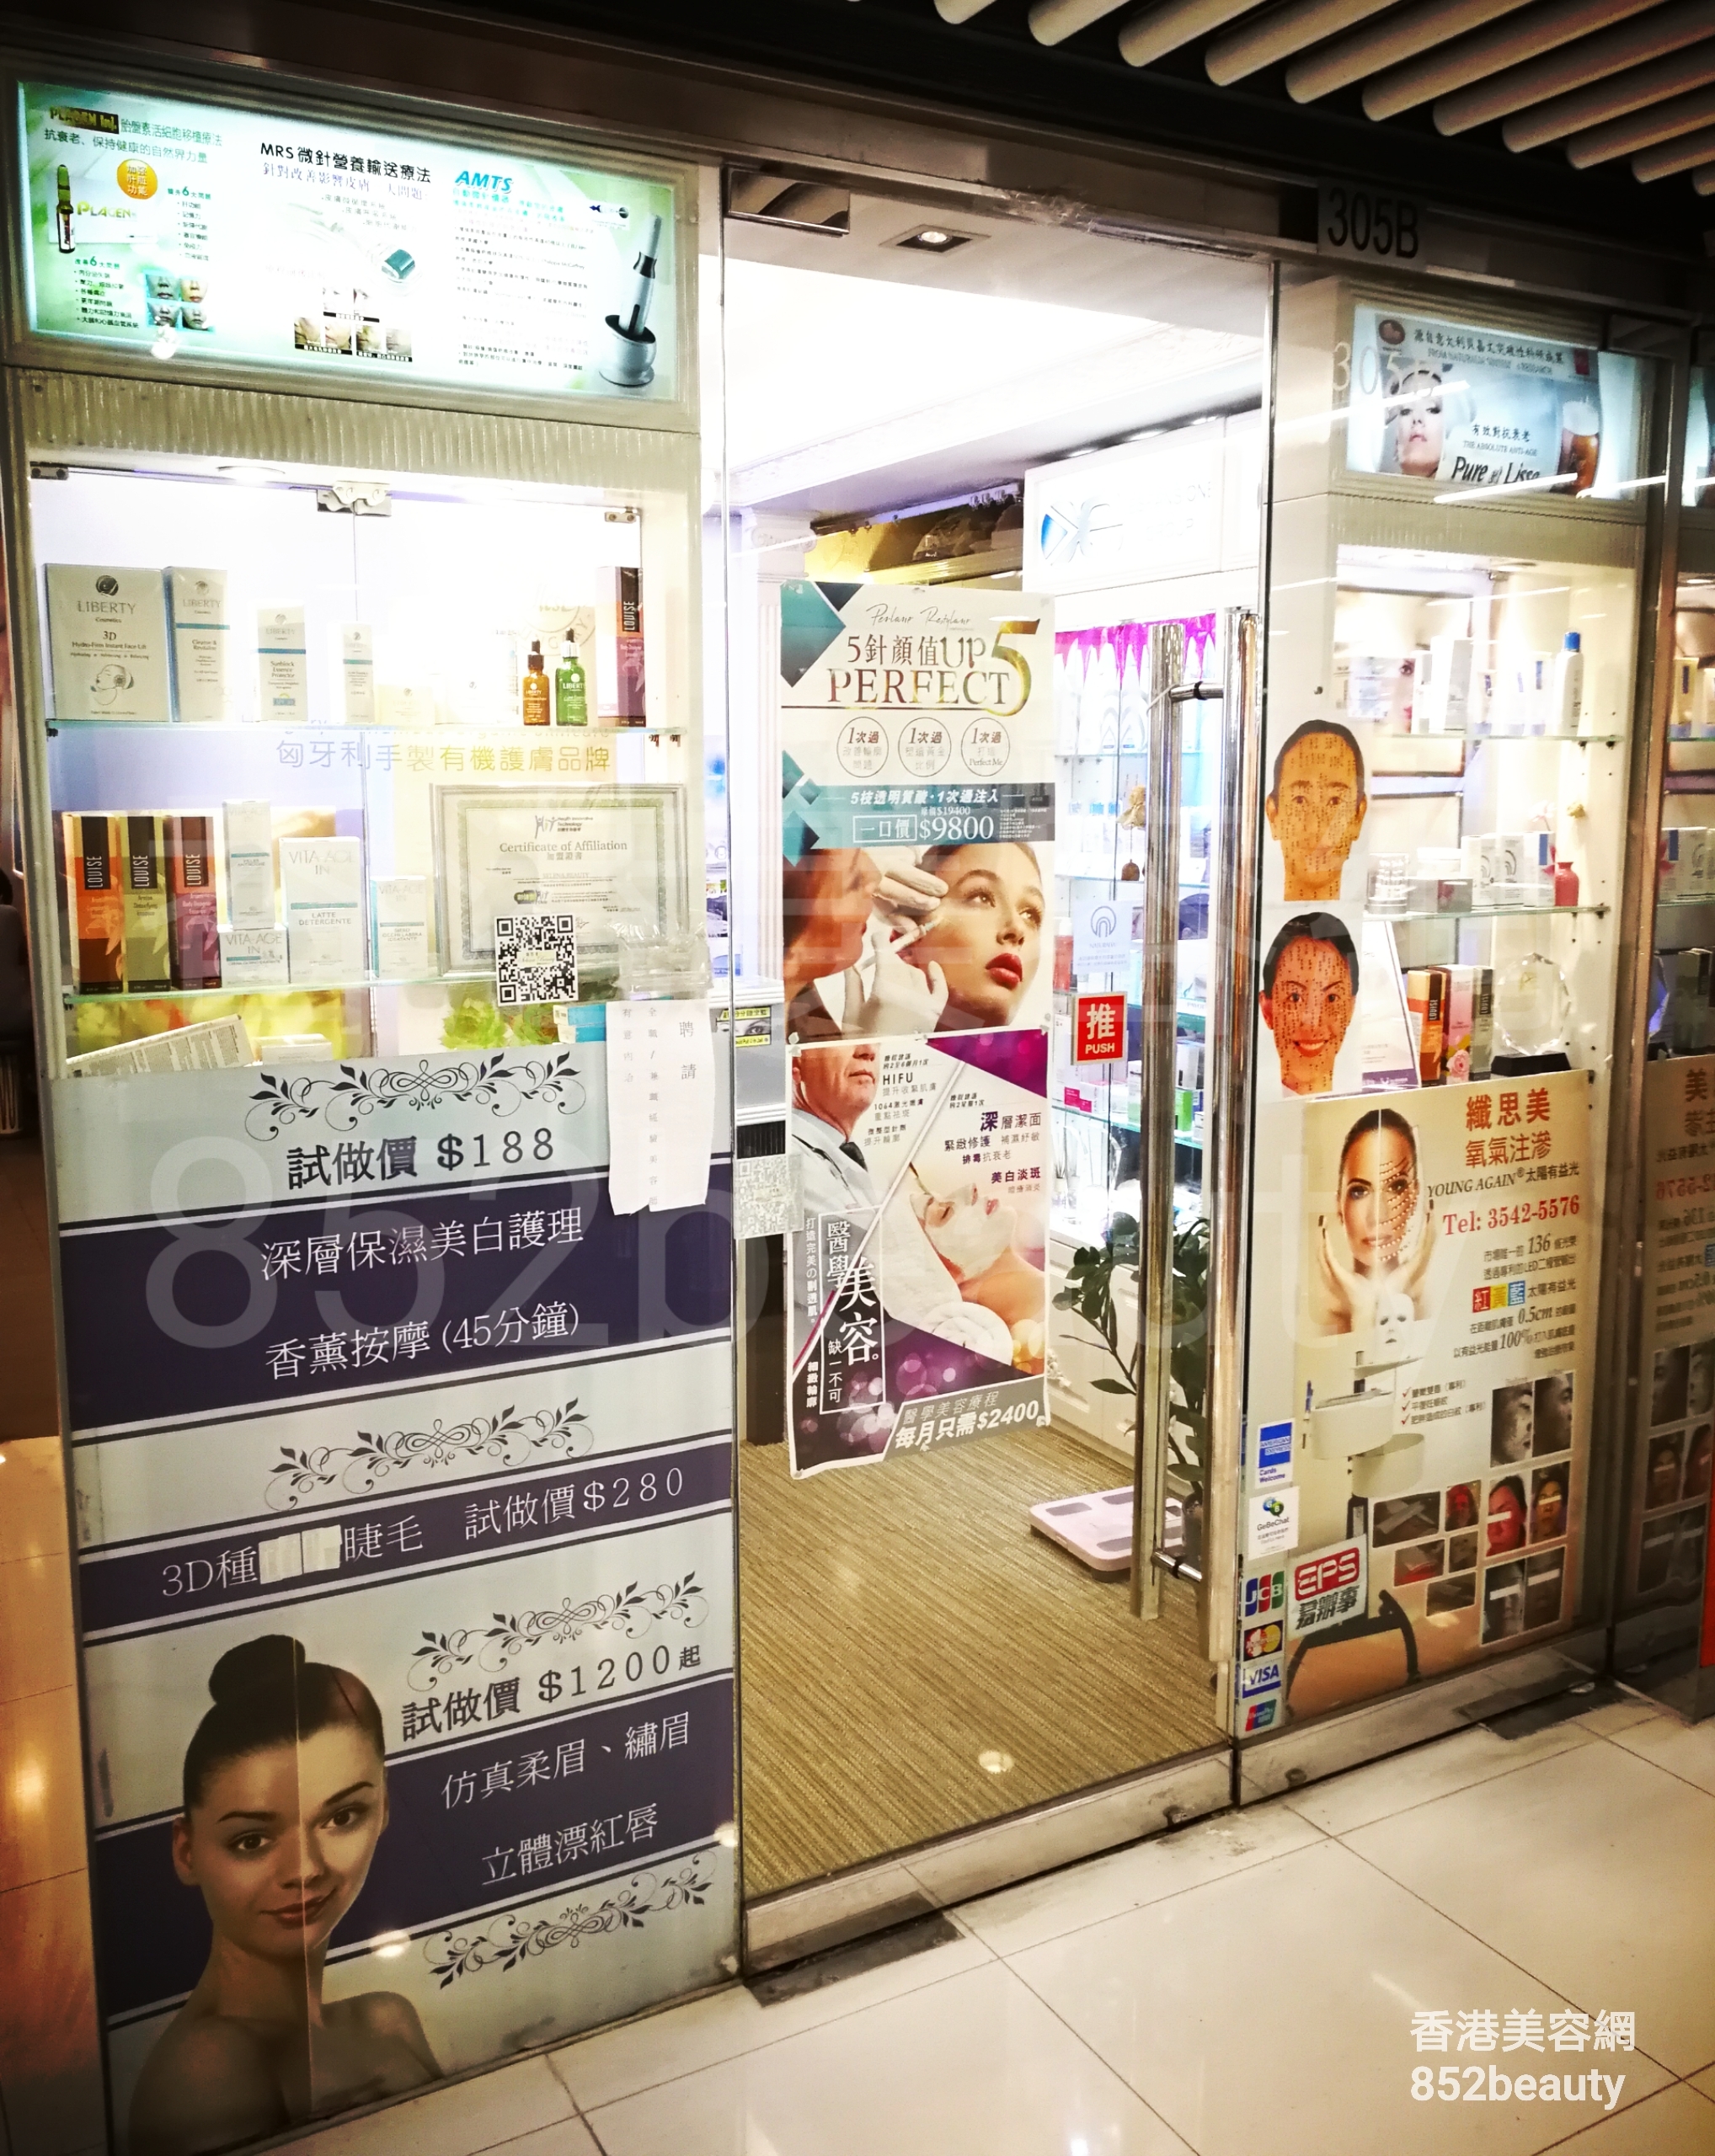 香港美容網 Hong Kong Beauty Salon 美容院 / 美容師: 纖思美